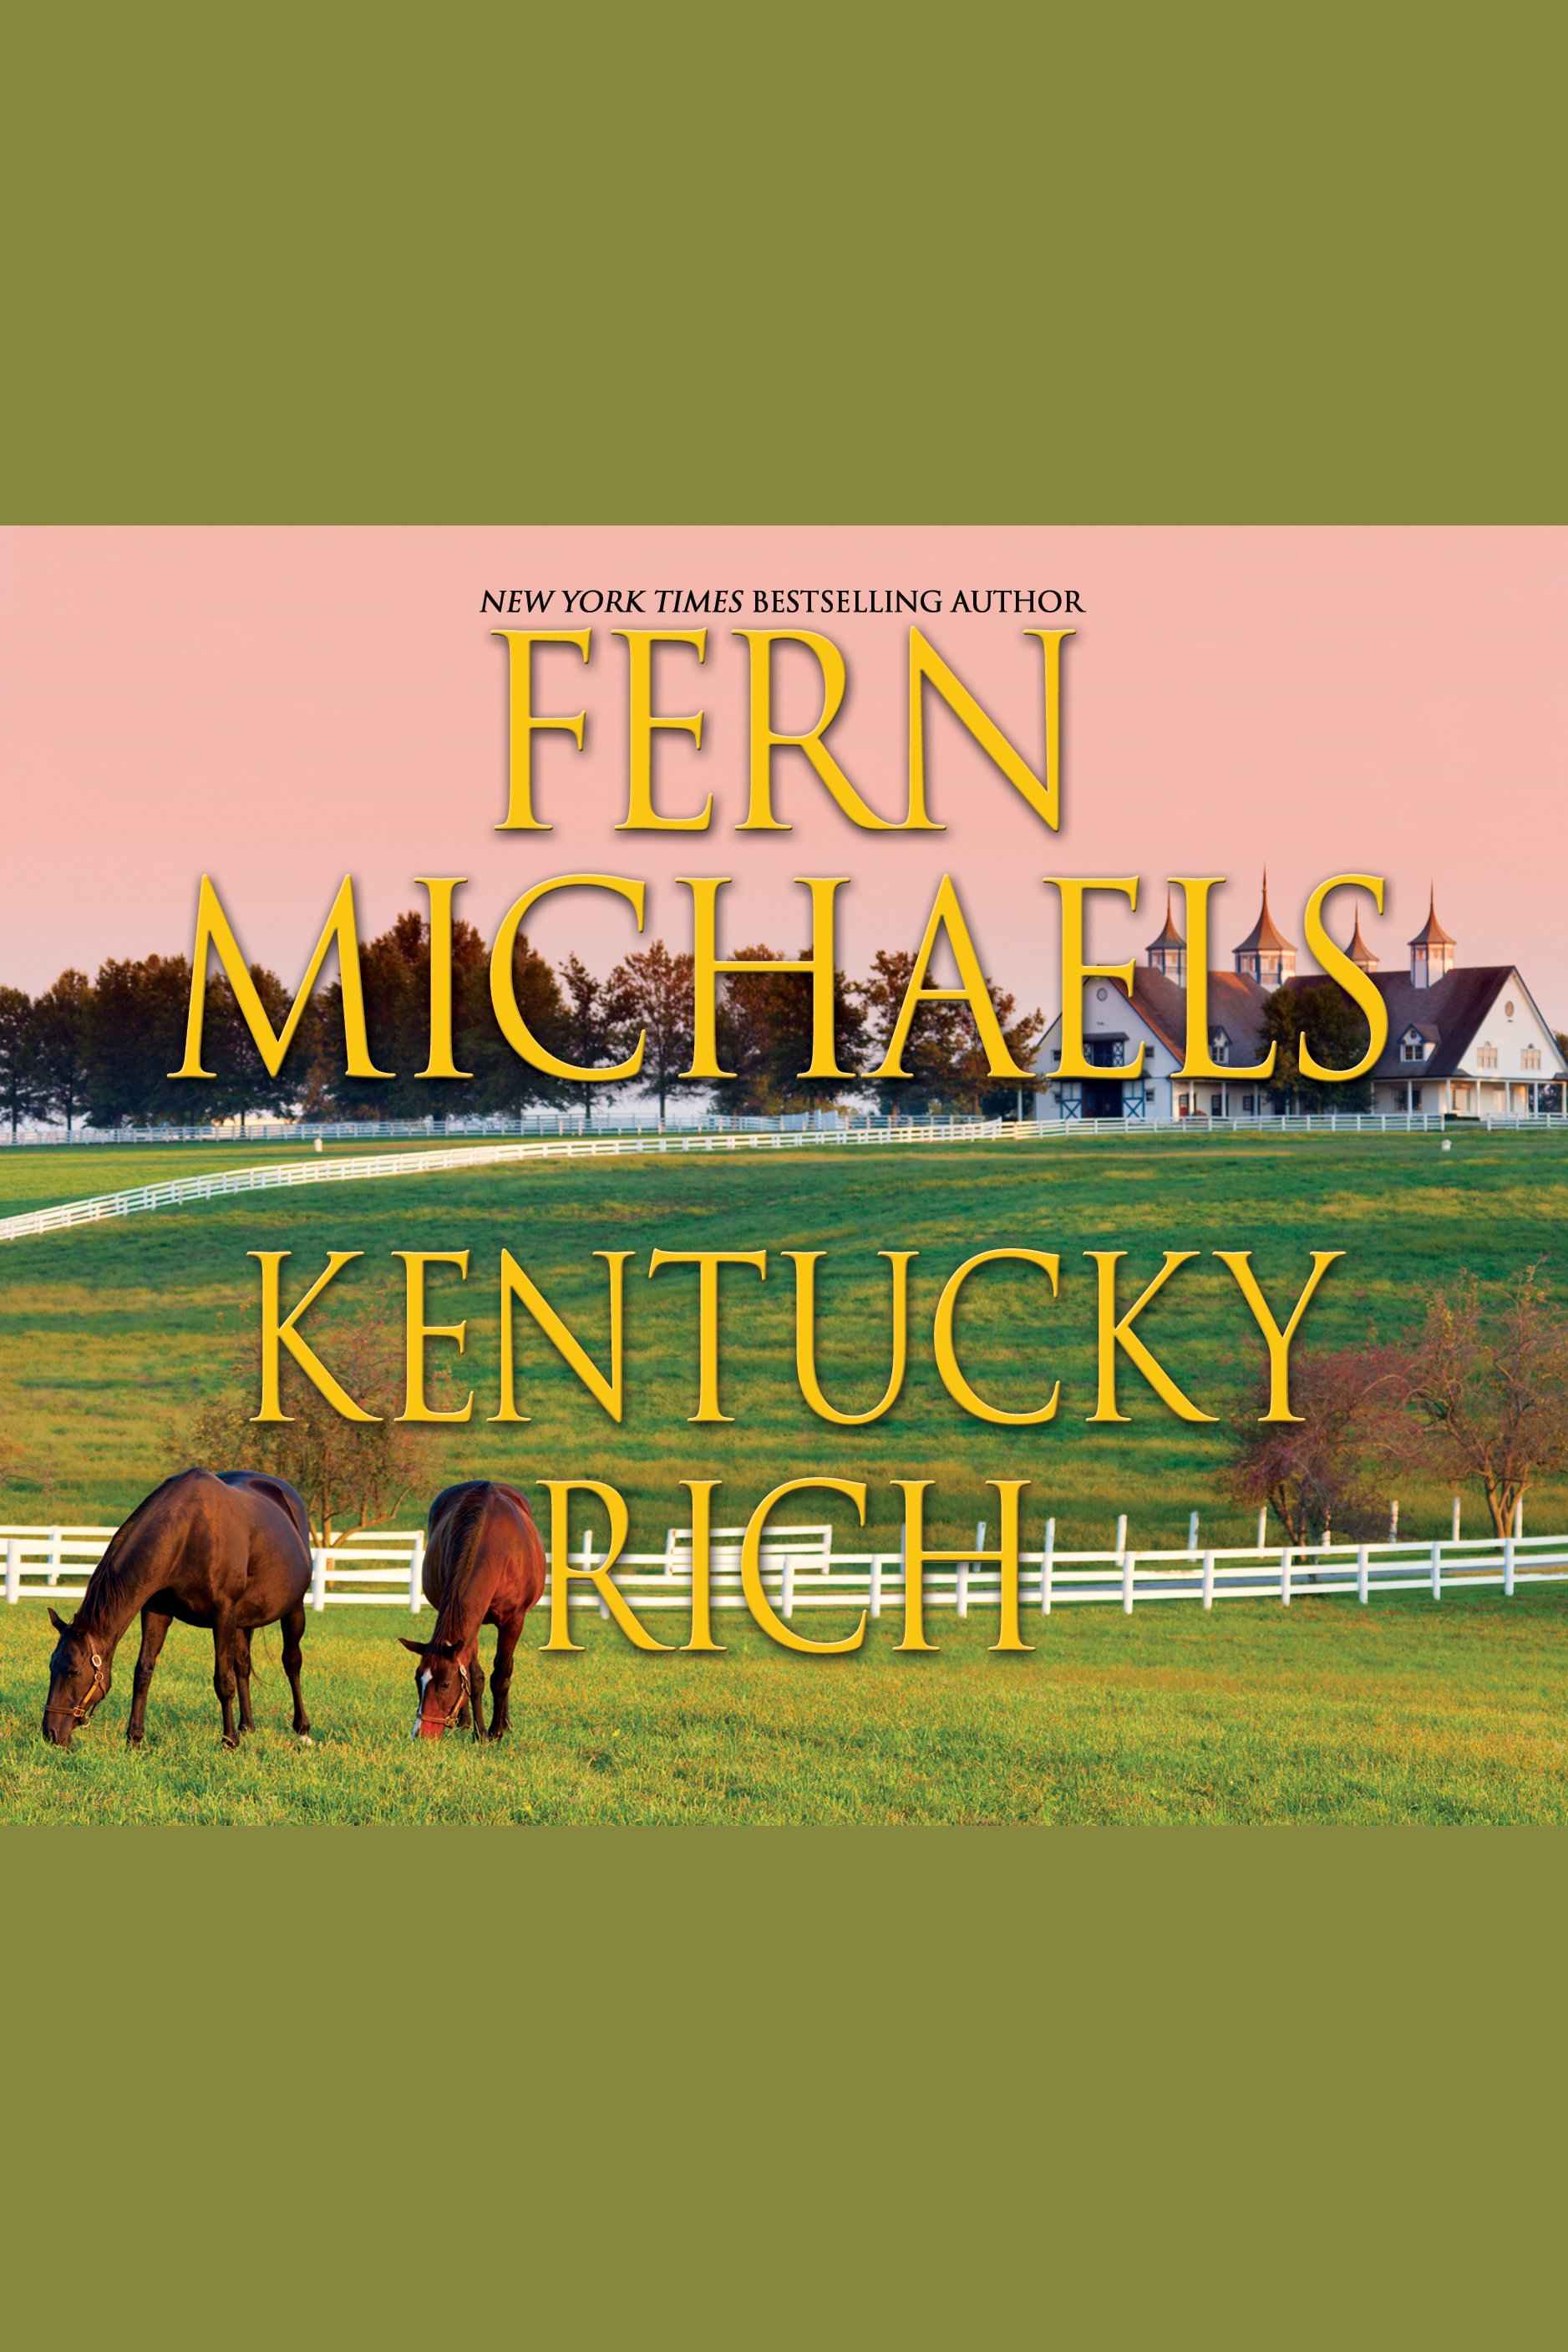 Image de couverture de Kentucky Rich [electronic resource] :